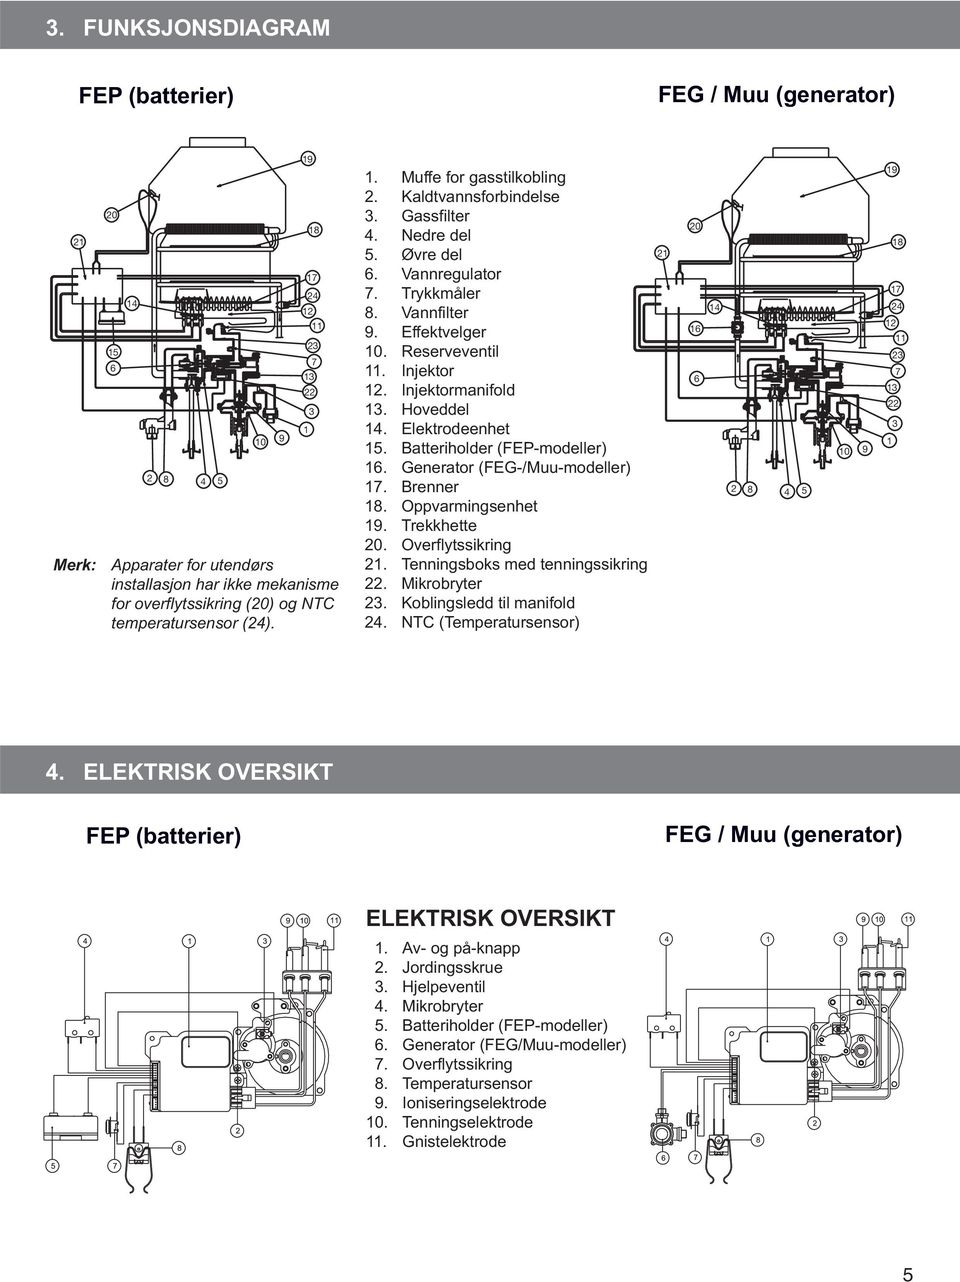 Reserveventil 11. Injektor 12. Injektormanifold 13. Hoveddel 14. Elektrodeenhet 15. Batteriholder (FEP-modeller) 16. Generator (FEG-/Muu-modeller) 17. Brenner 18. Oppvarmingsenhet 19. Trekkhette 20.